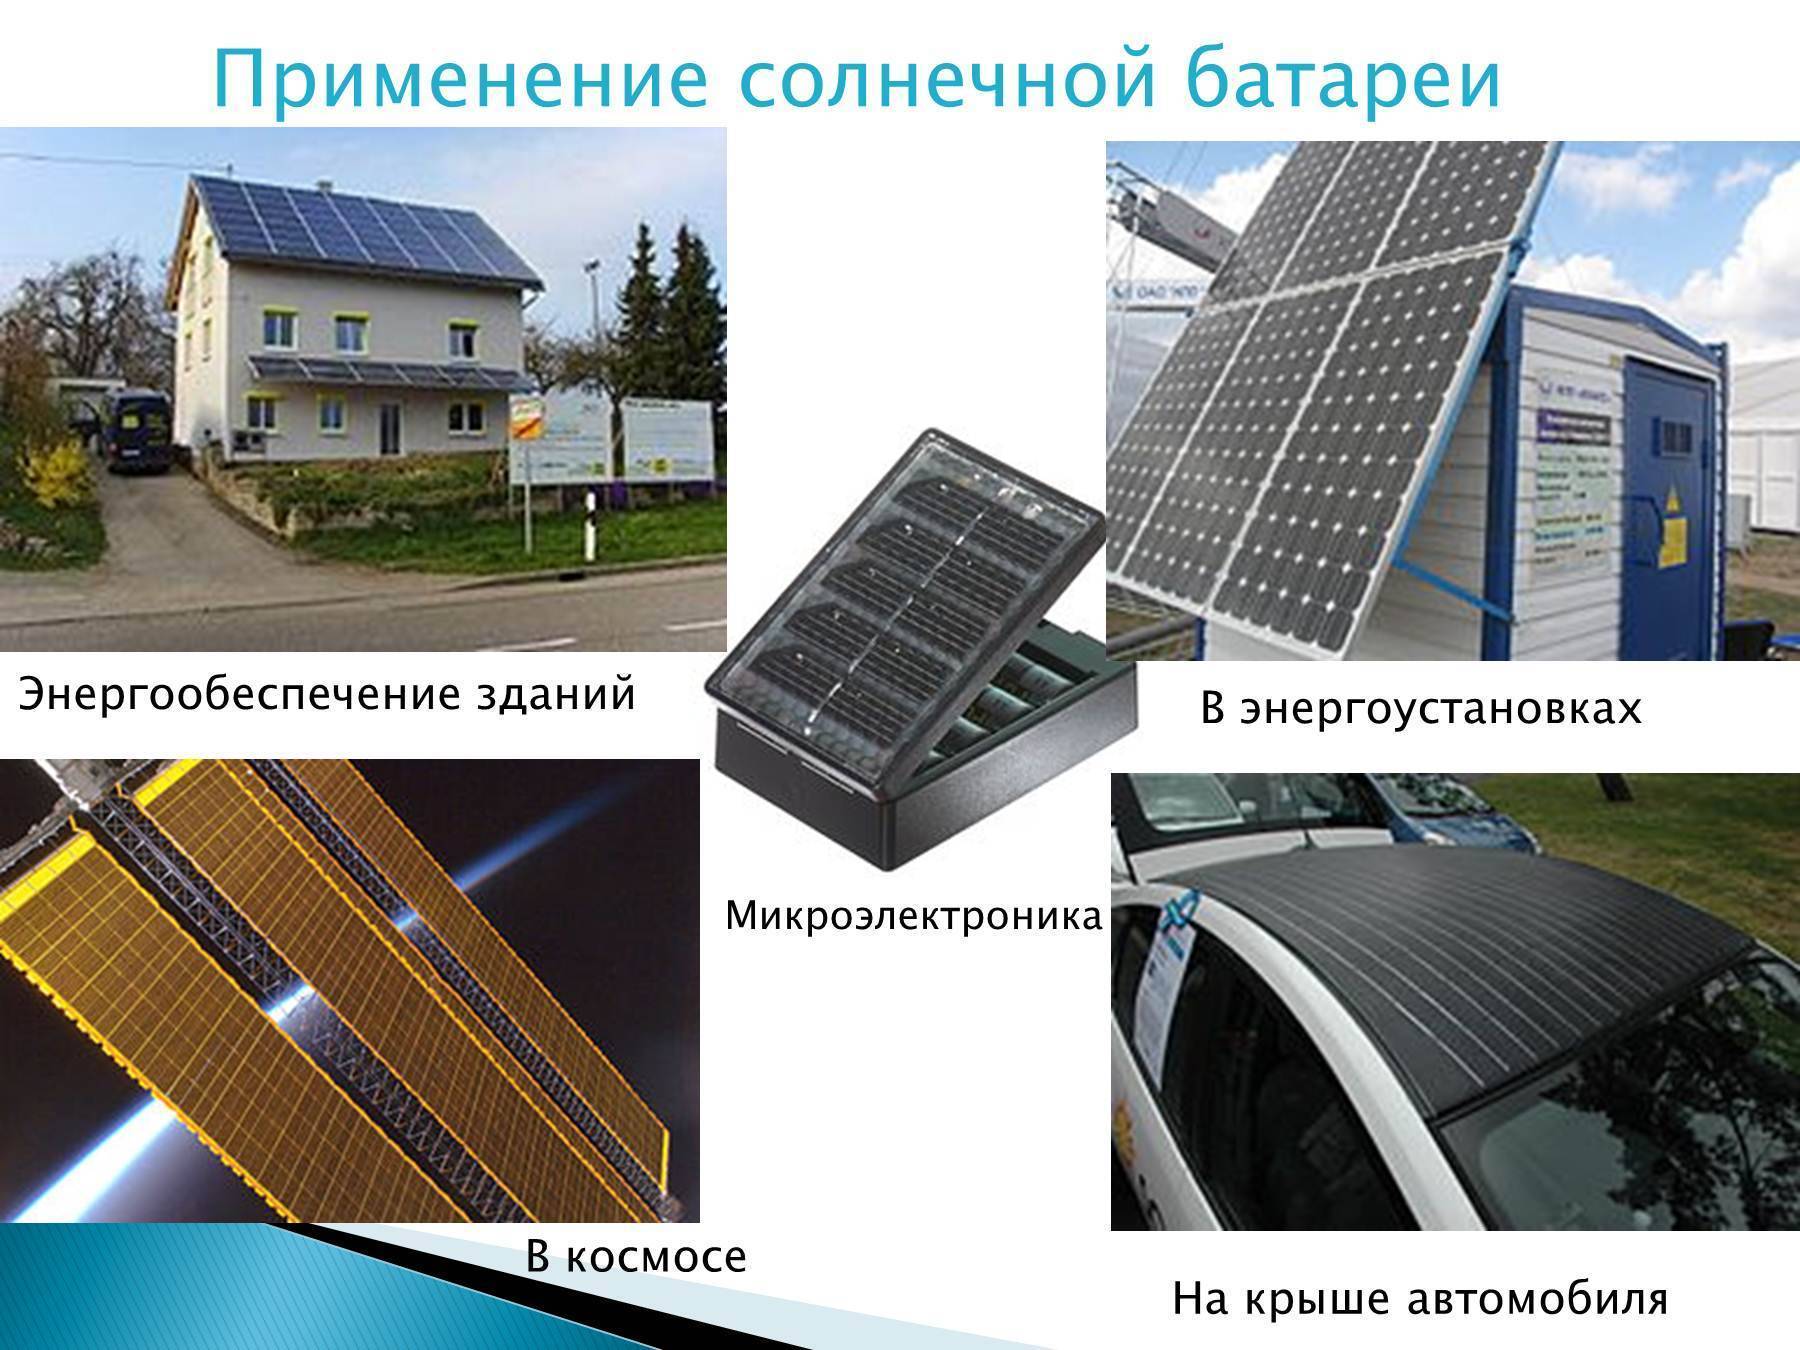 Как экономить на электроэнергии с помощью солнечной электростанции